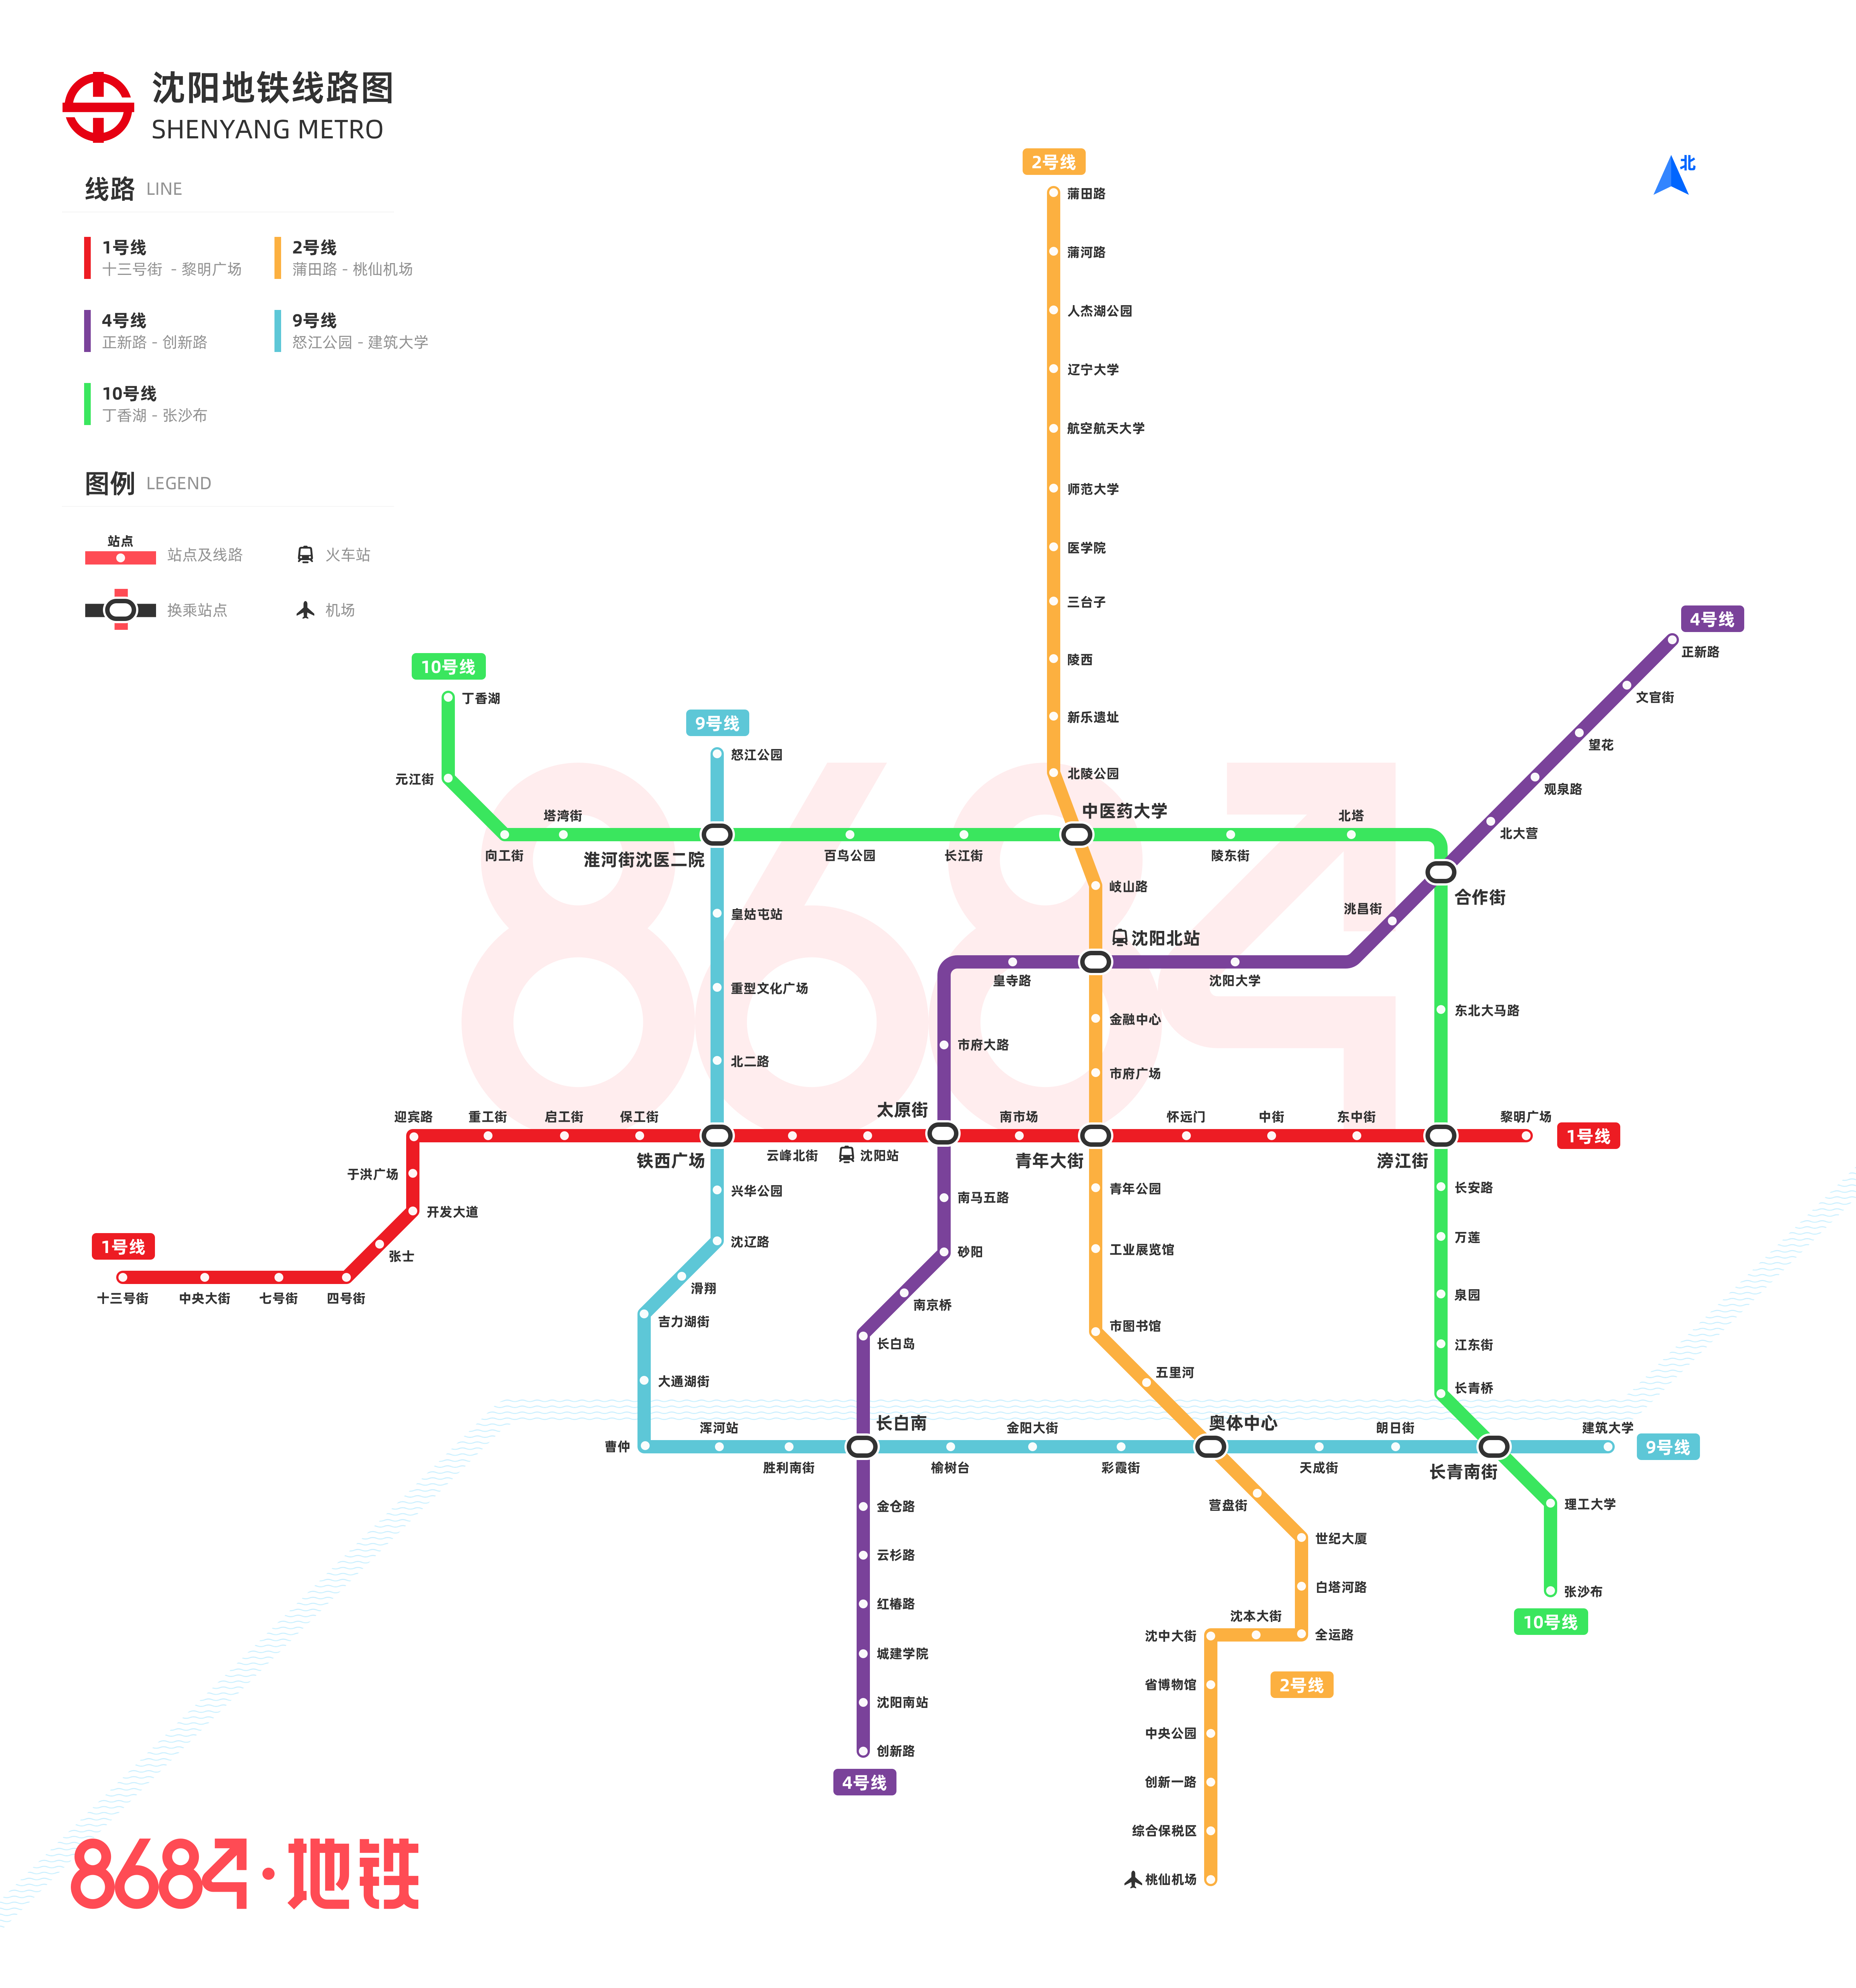 2021年沈阳地铁线路图图片